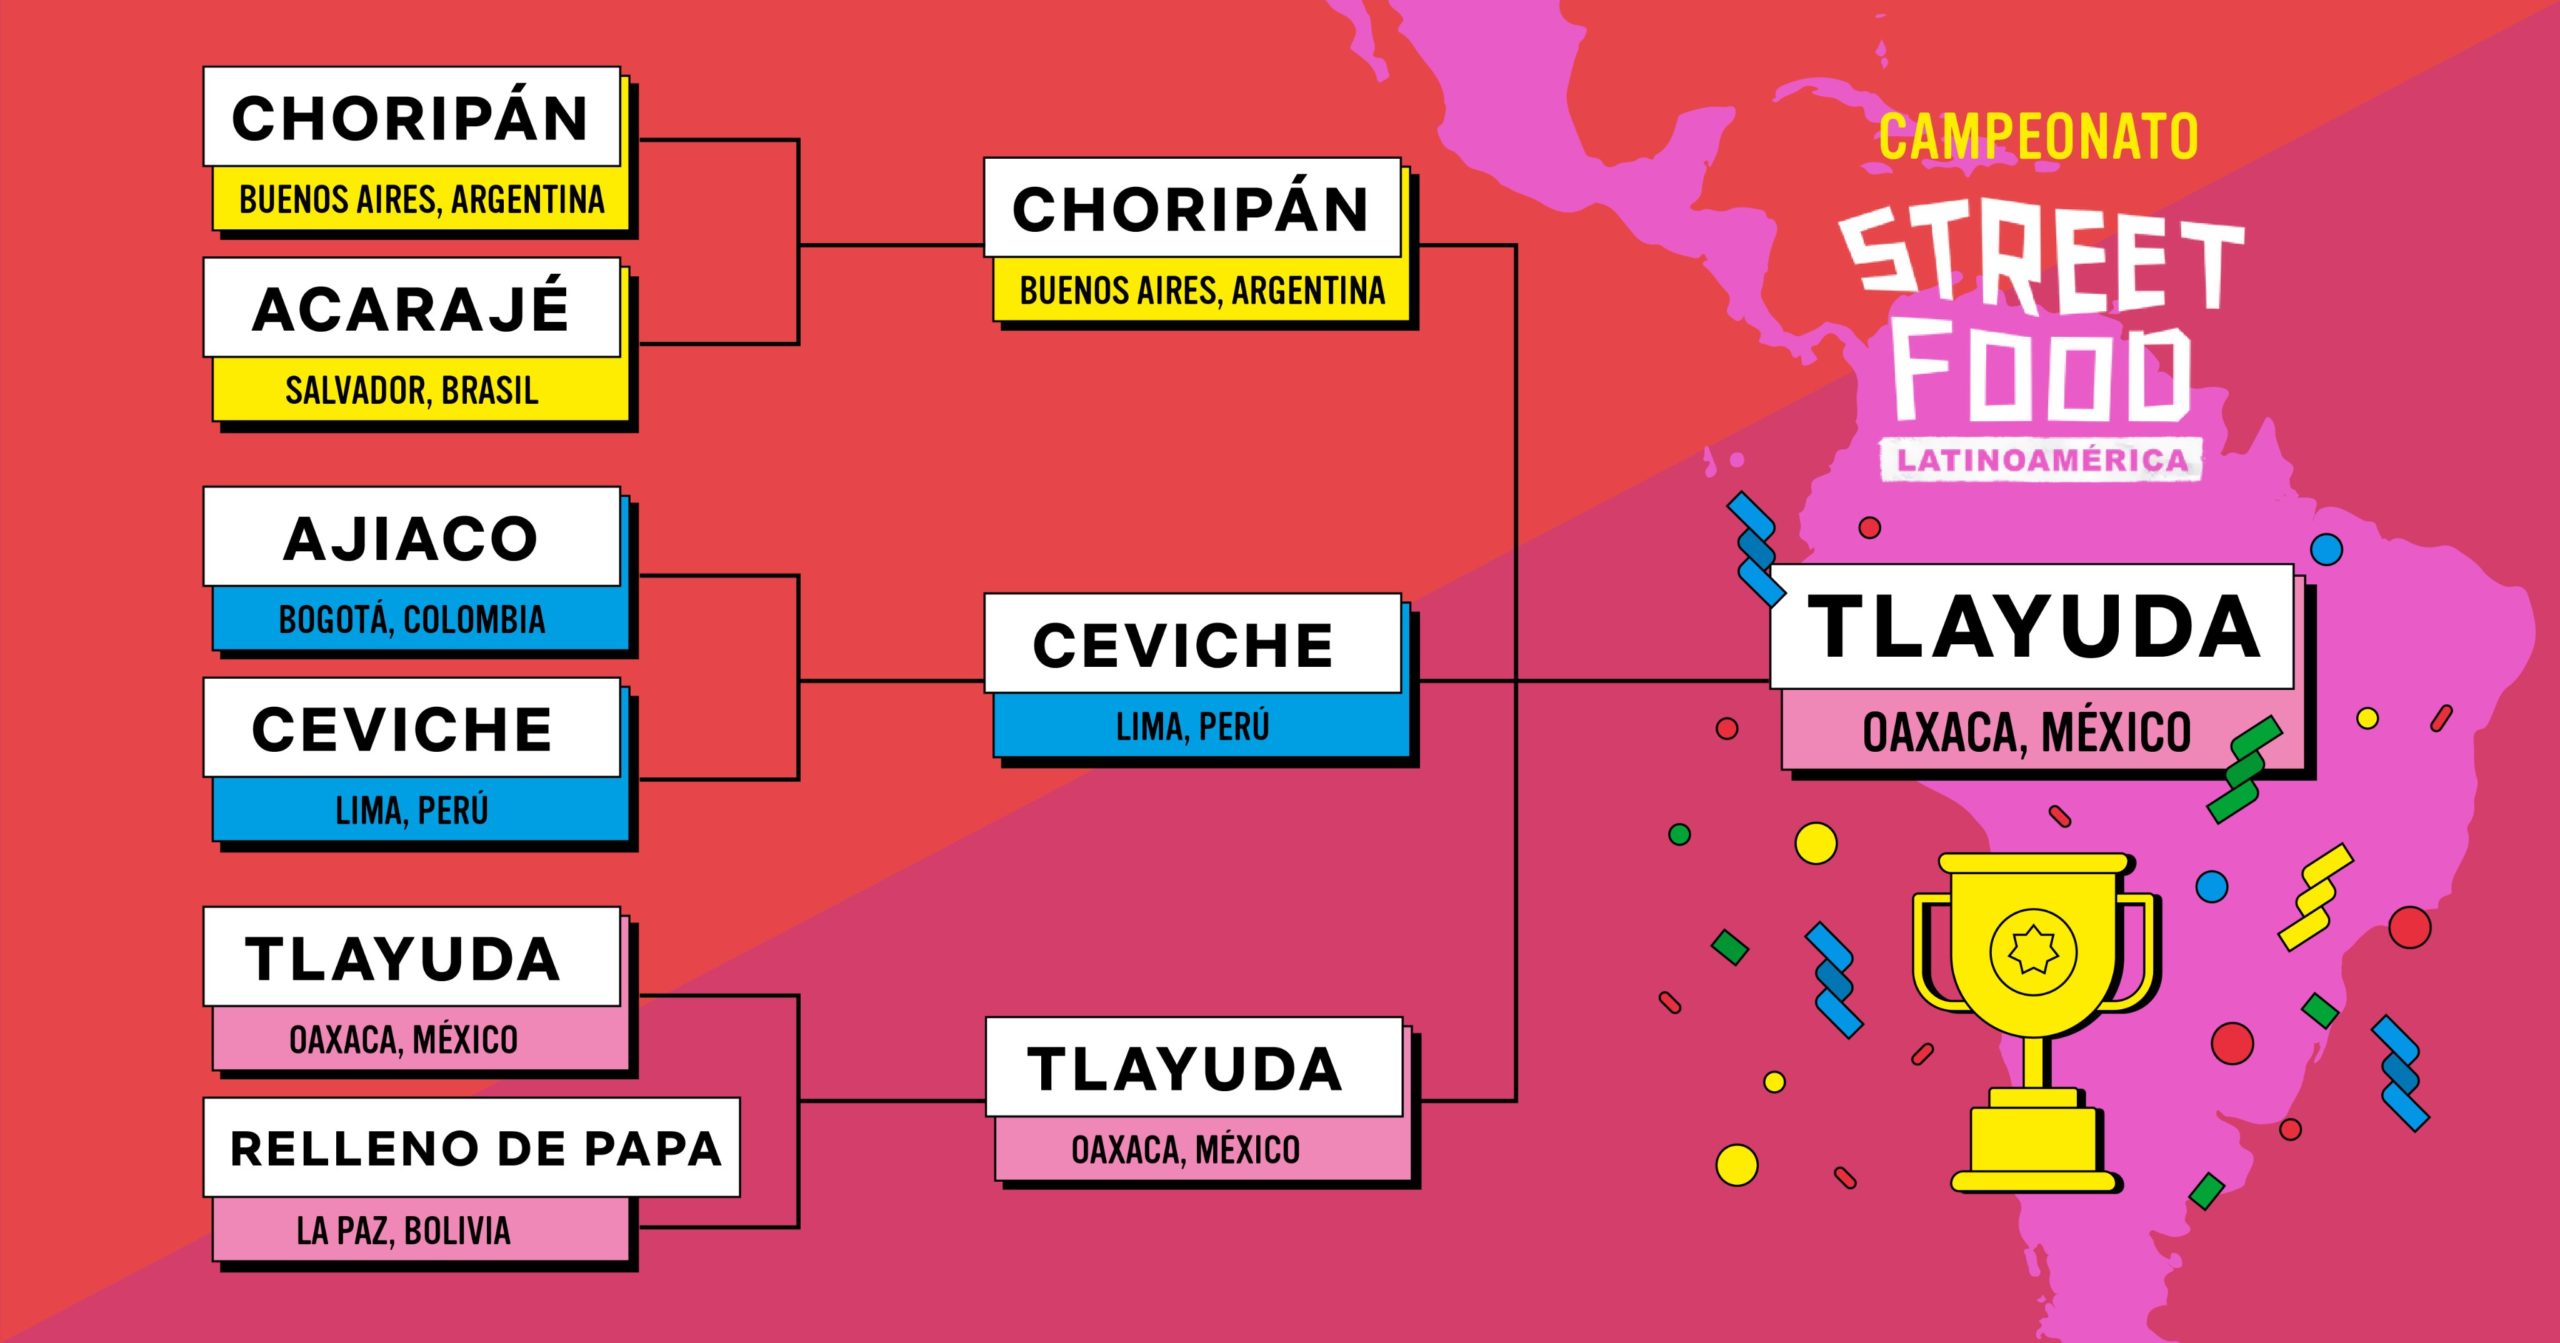 La tlayuda ganó como el mejor antojito callejero de Latinoamérica